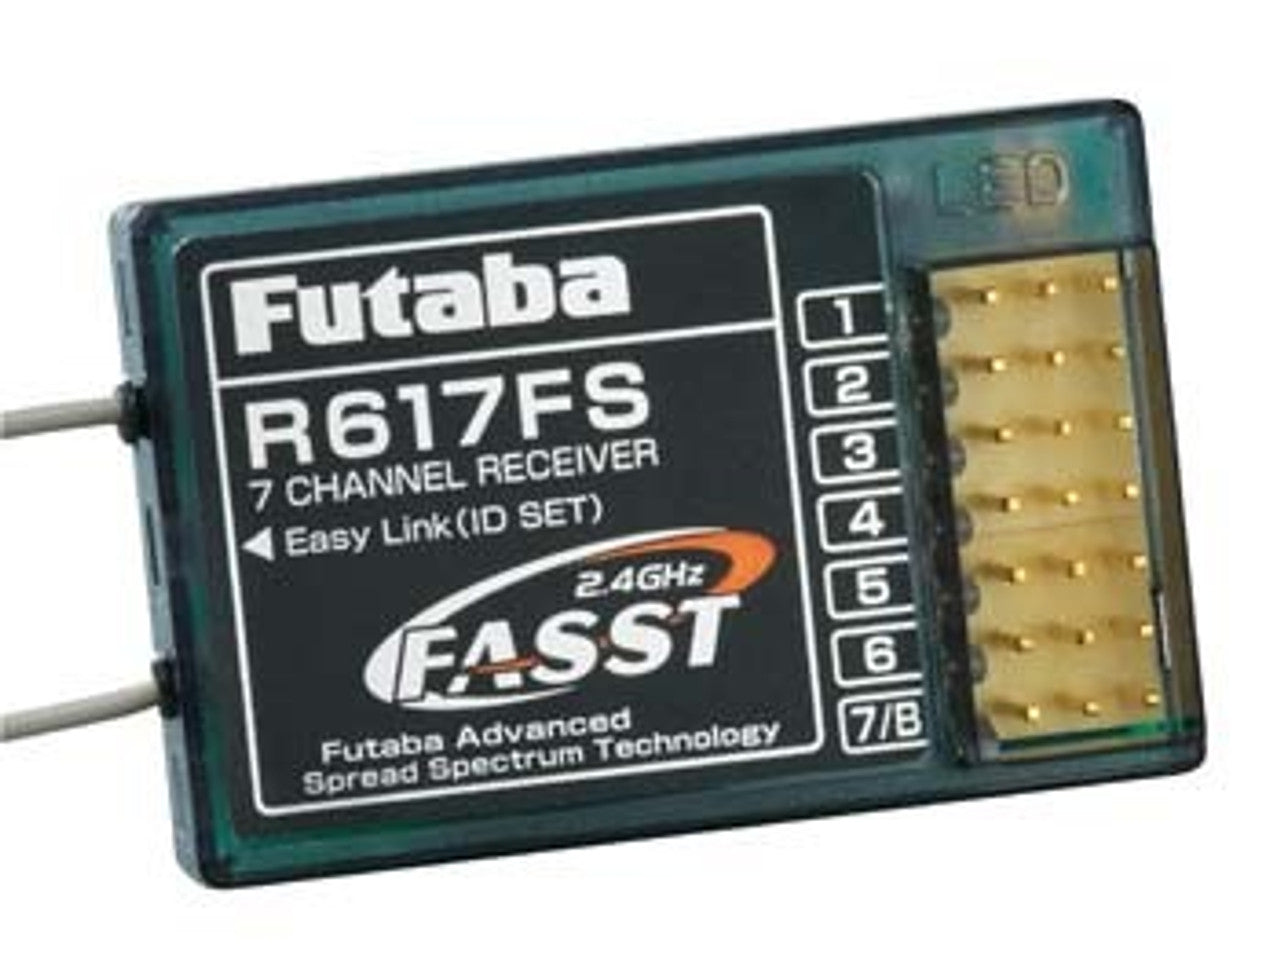 Futaba R617FS 7-Channel FASST Receiver